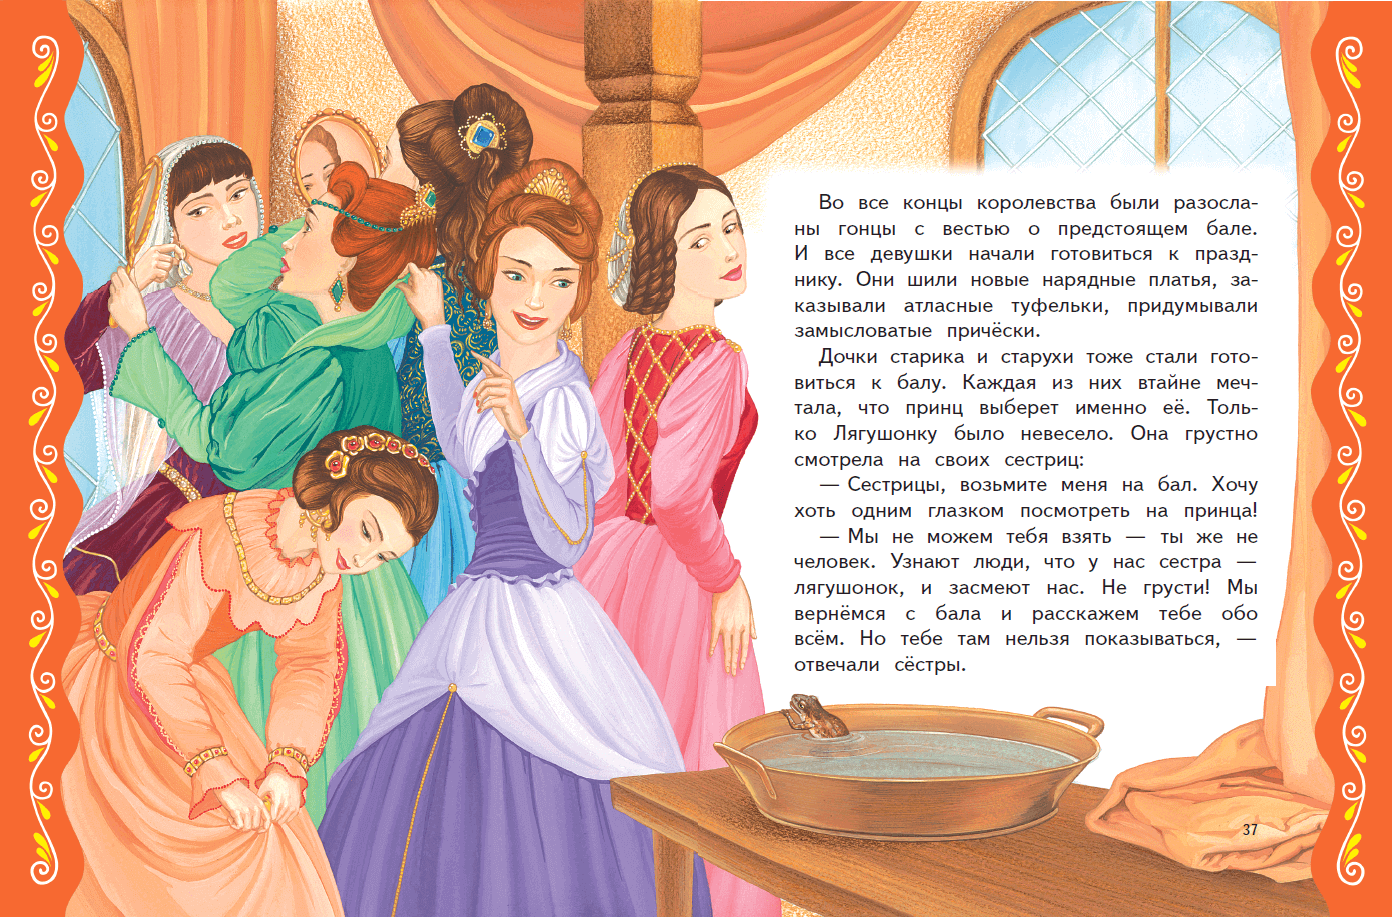 Читать про принца. Сказки о принцах и принцессах. Сказки о принцах и принцессах книга. Детские сказки про принцесс. Принц сказка.